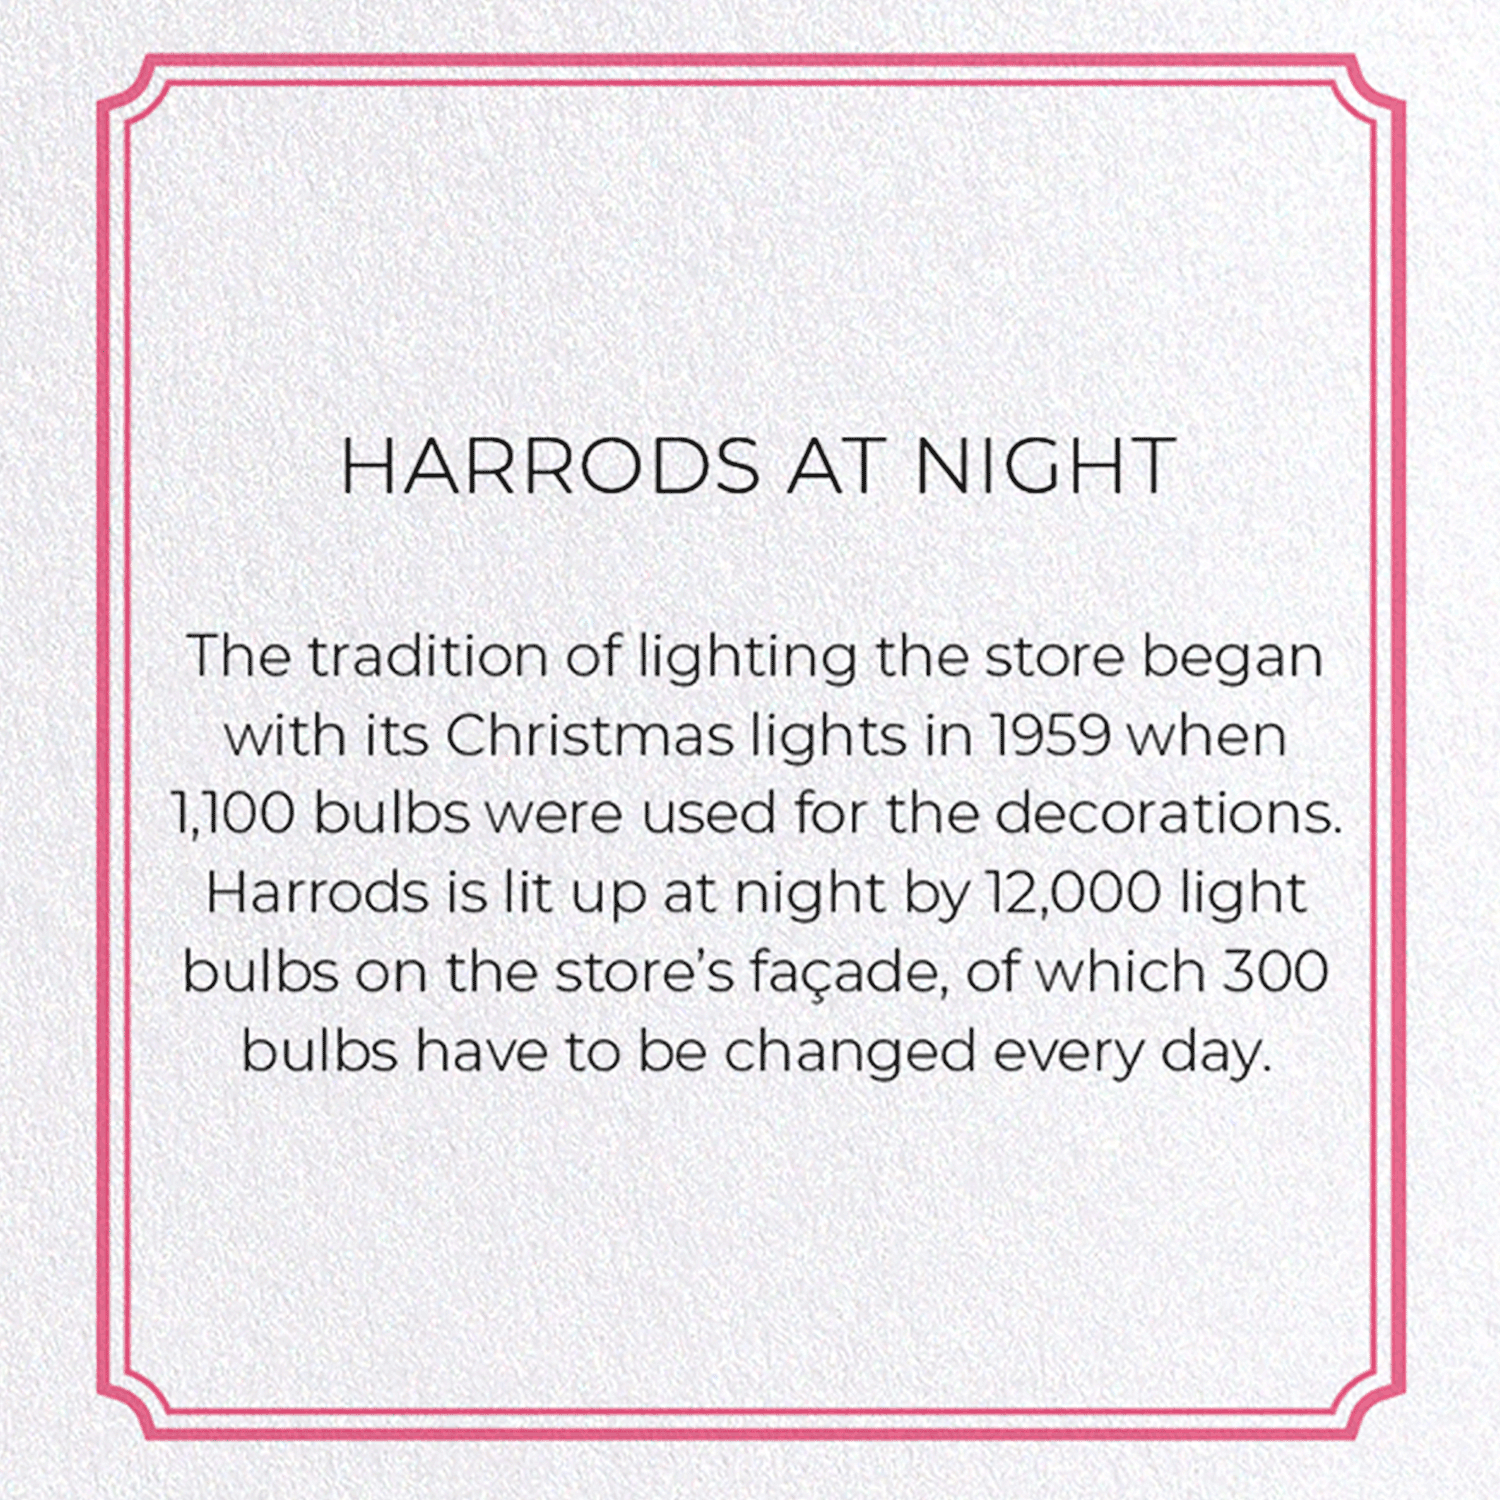 HARRODS AT NIGHT